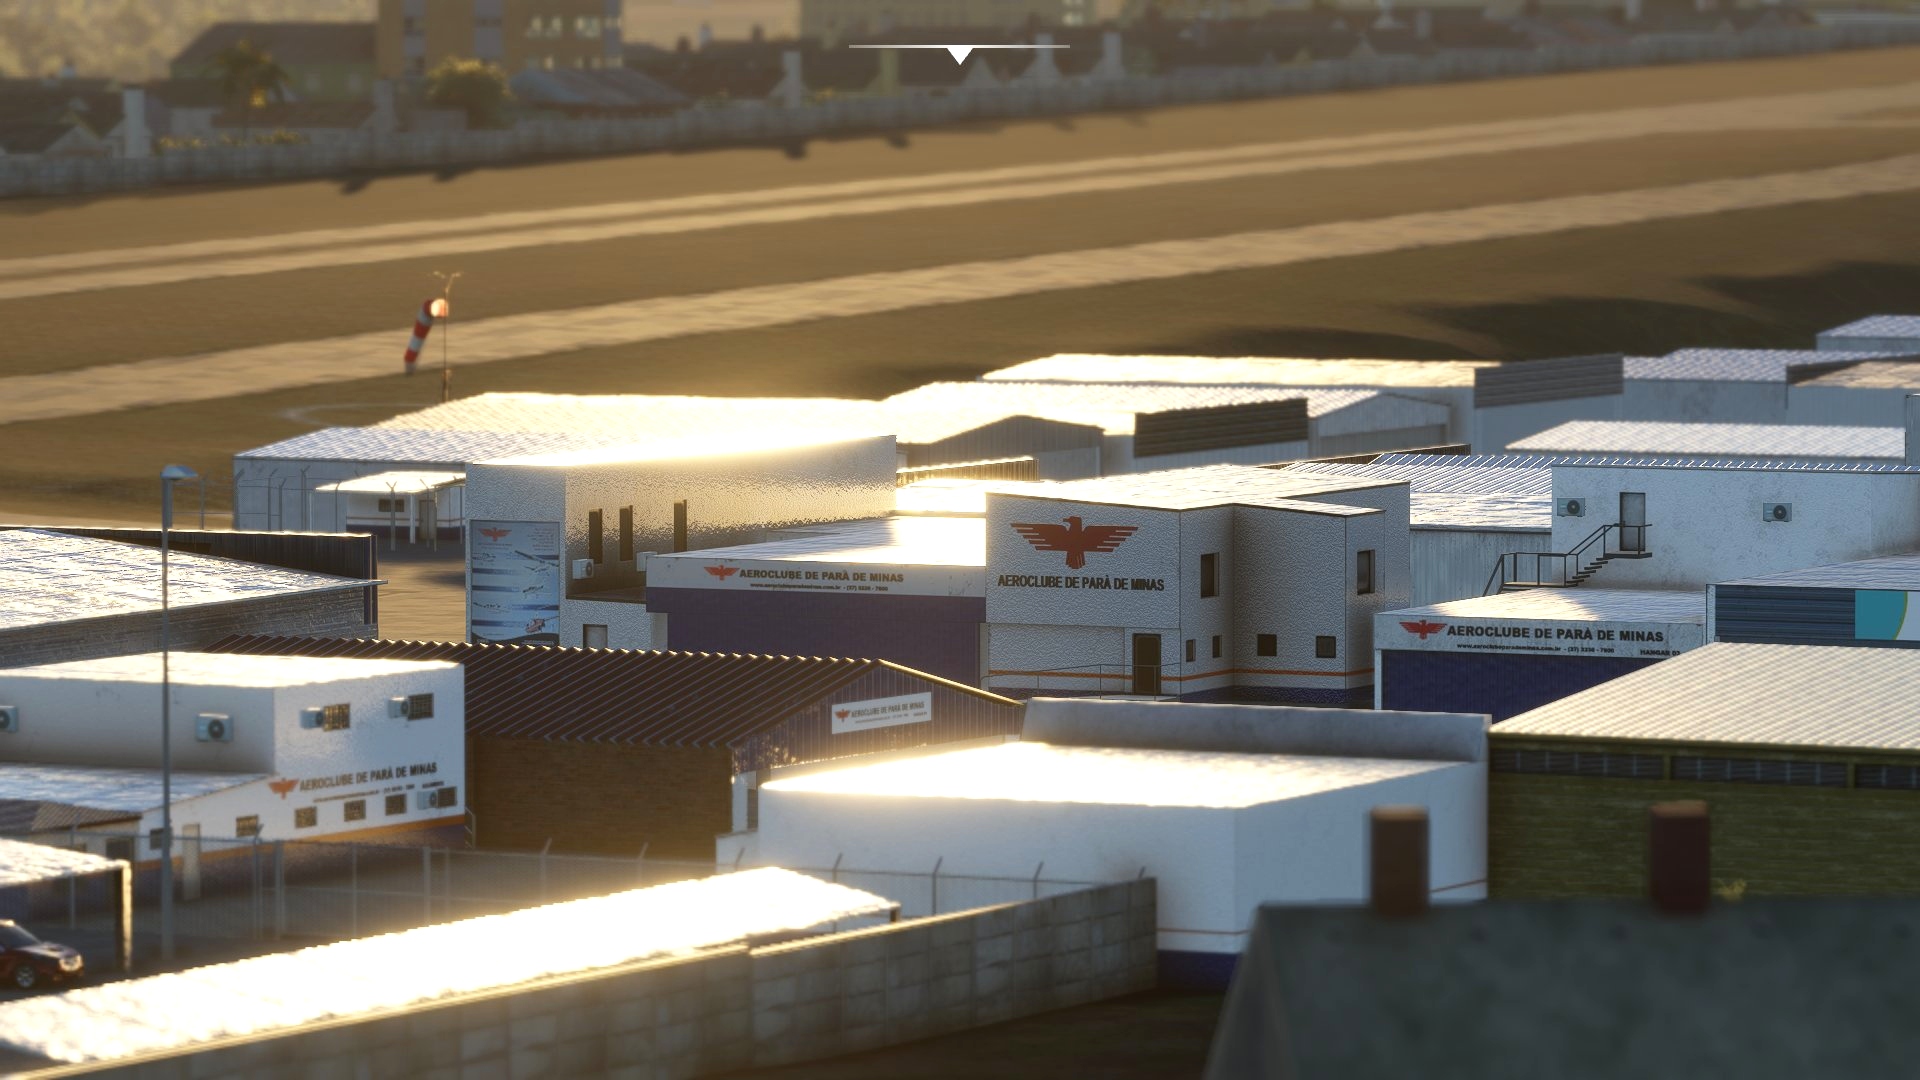 SNPA - Aeroclube Pará de Minas Microsoft Flight Simulator